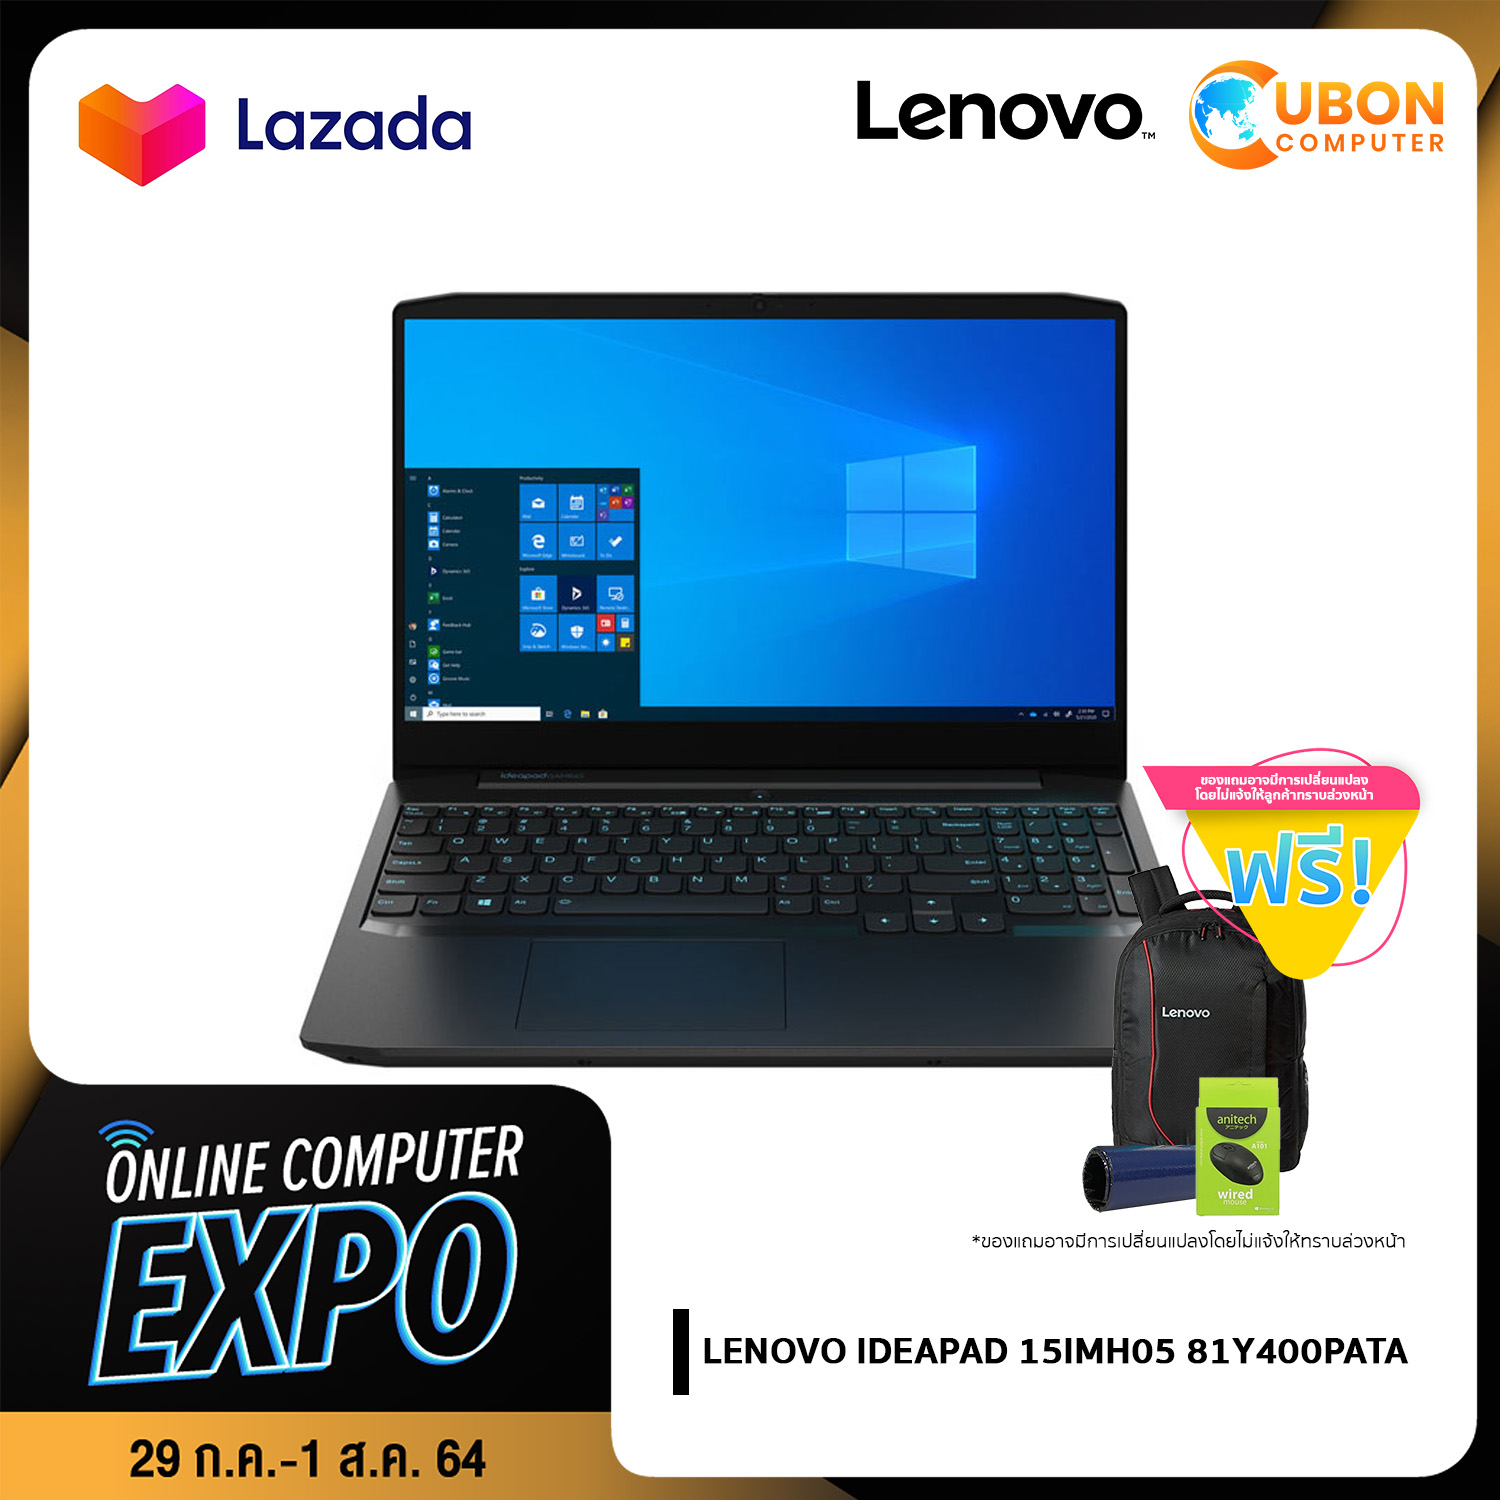 โน๊ตบุ๊ค Notebook LENOVO IDEAPAD 15IMH05 81Y400PATA 15.6inch/i5-10300H/8GB DDR4/512GB SSD/GTX1650Ti/Win10 ประกันศูนย์ 2 ปี (Uboncomputer)